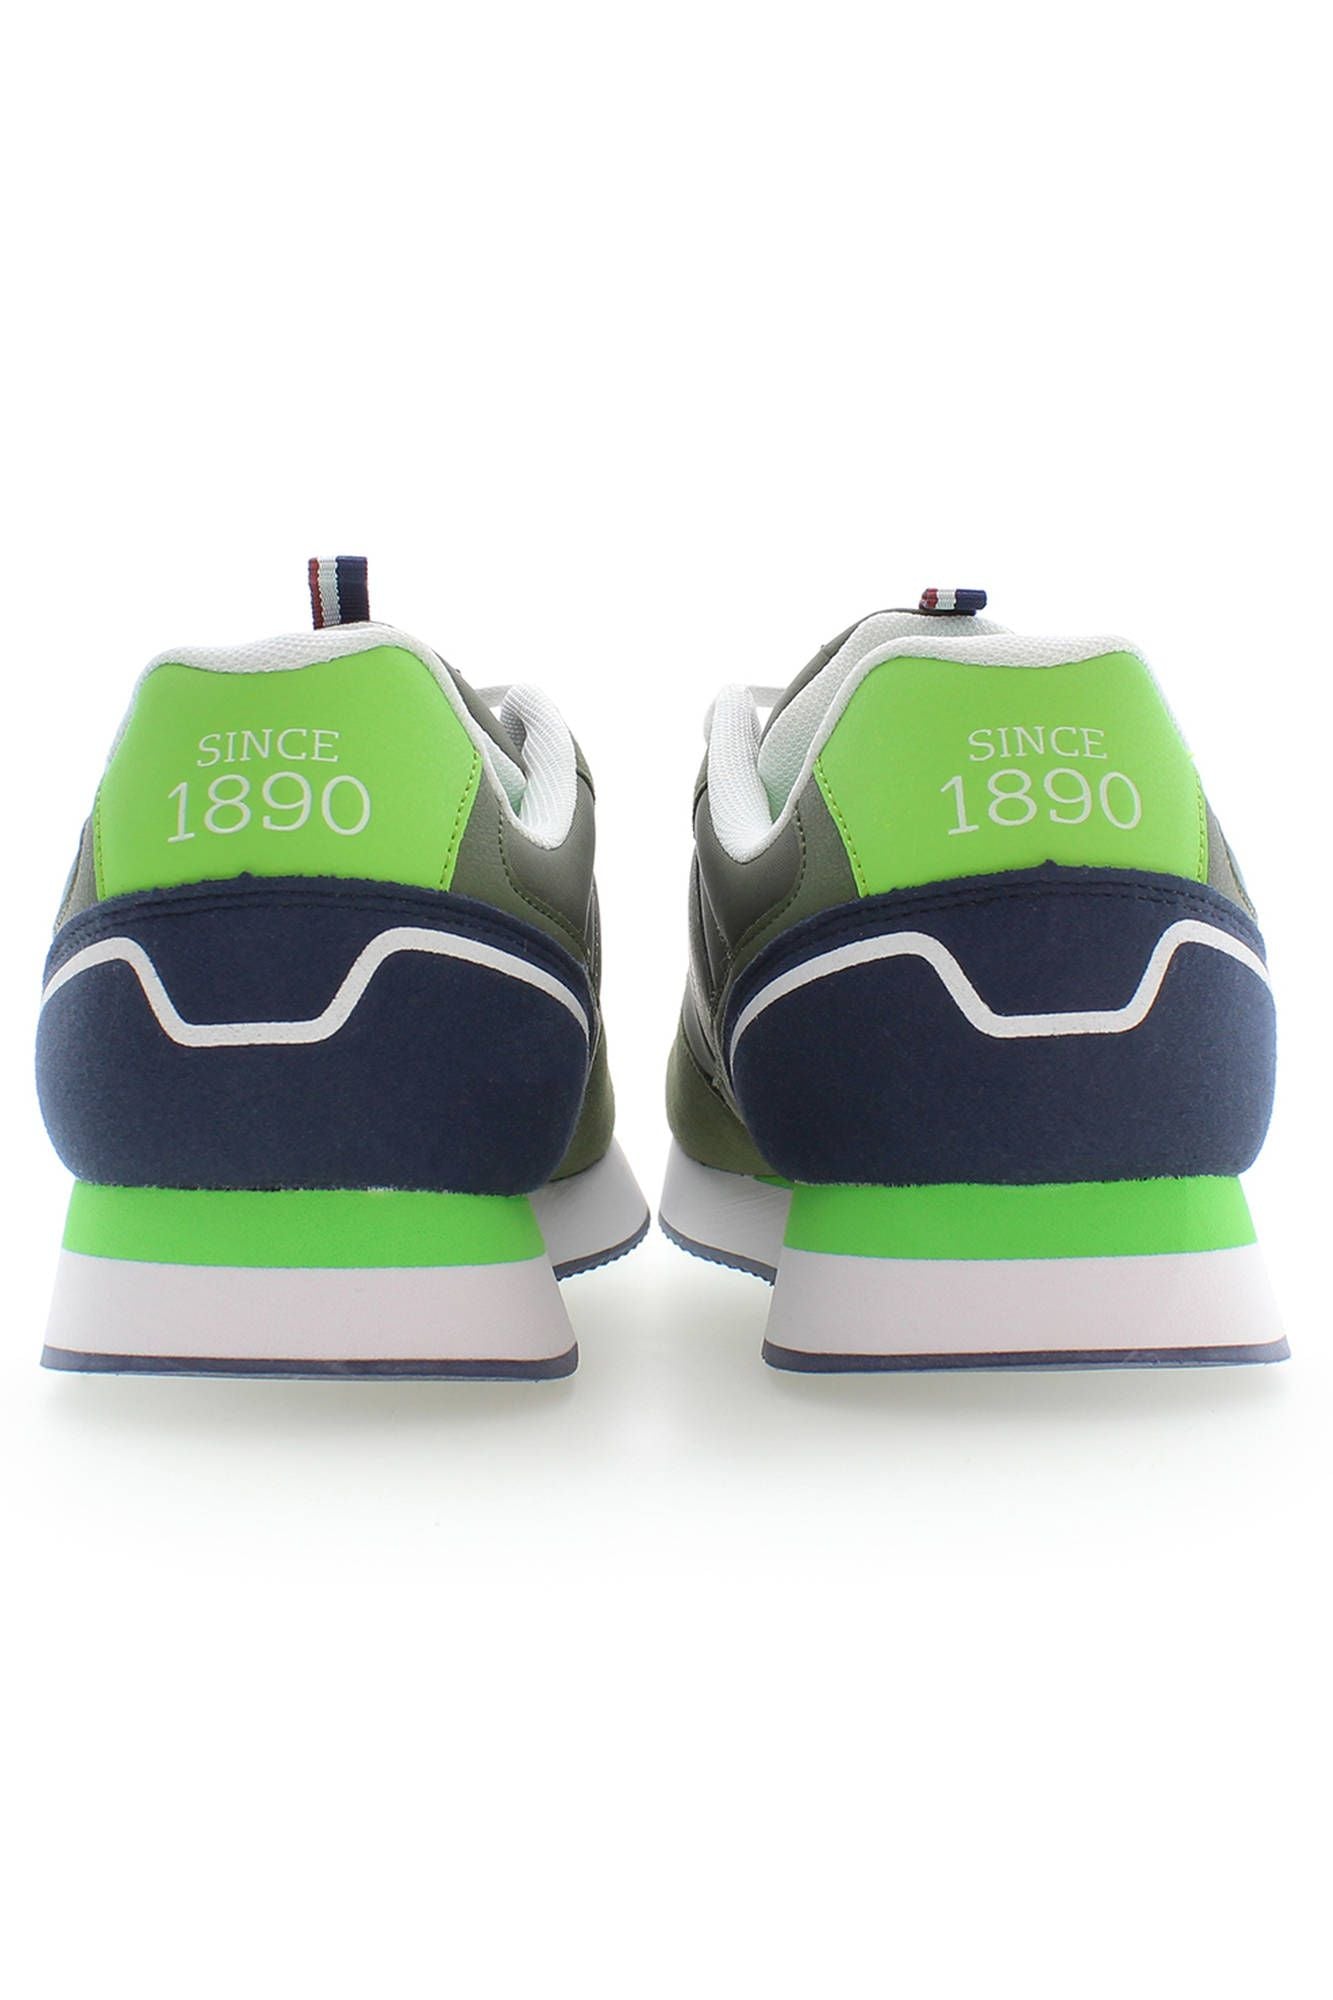 U.S. Polo Assn. Green Polyester Sneaker